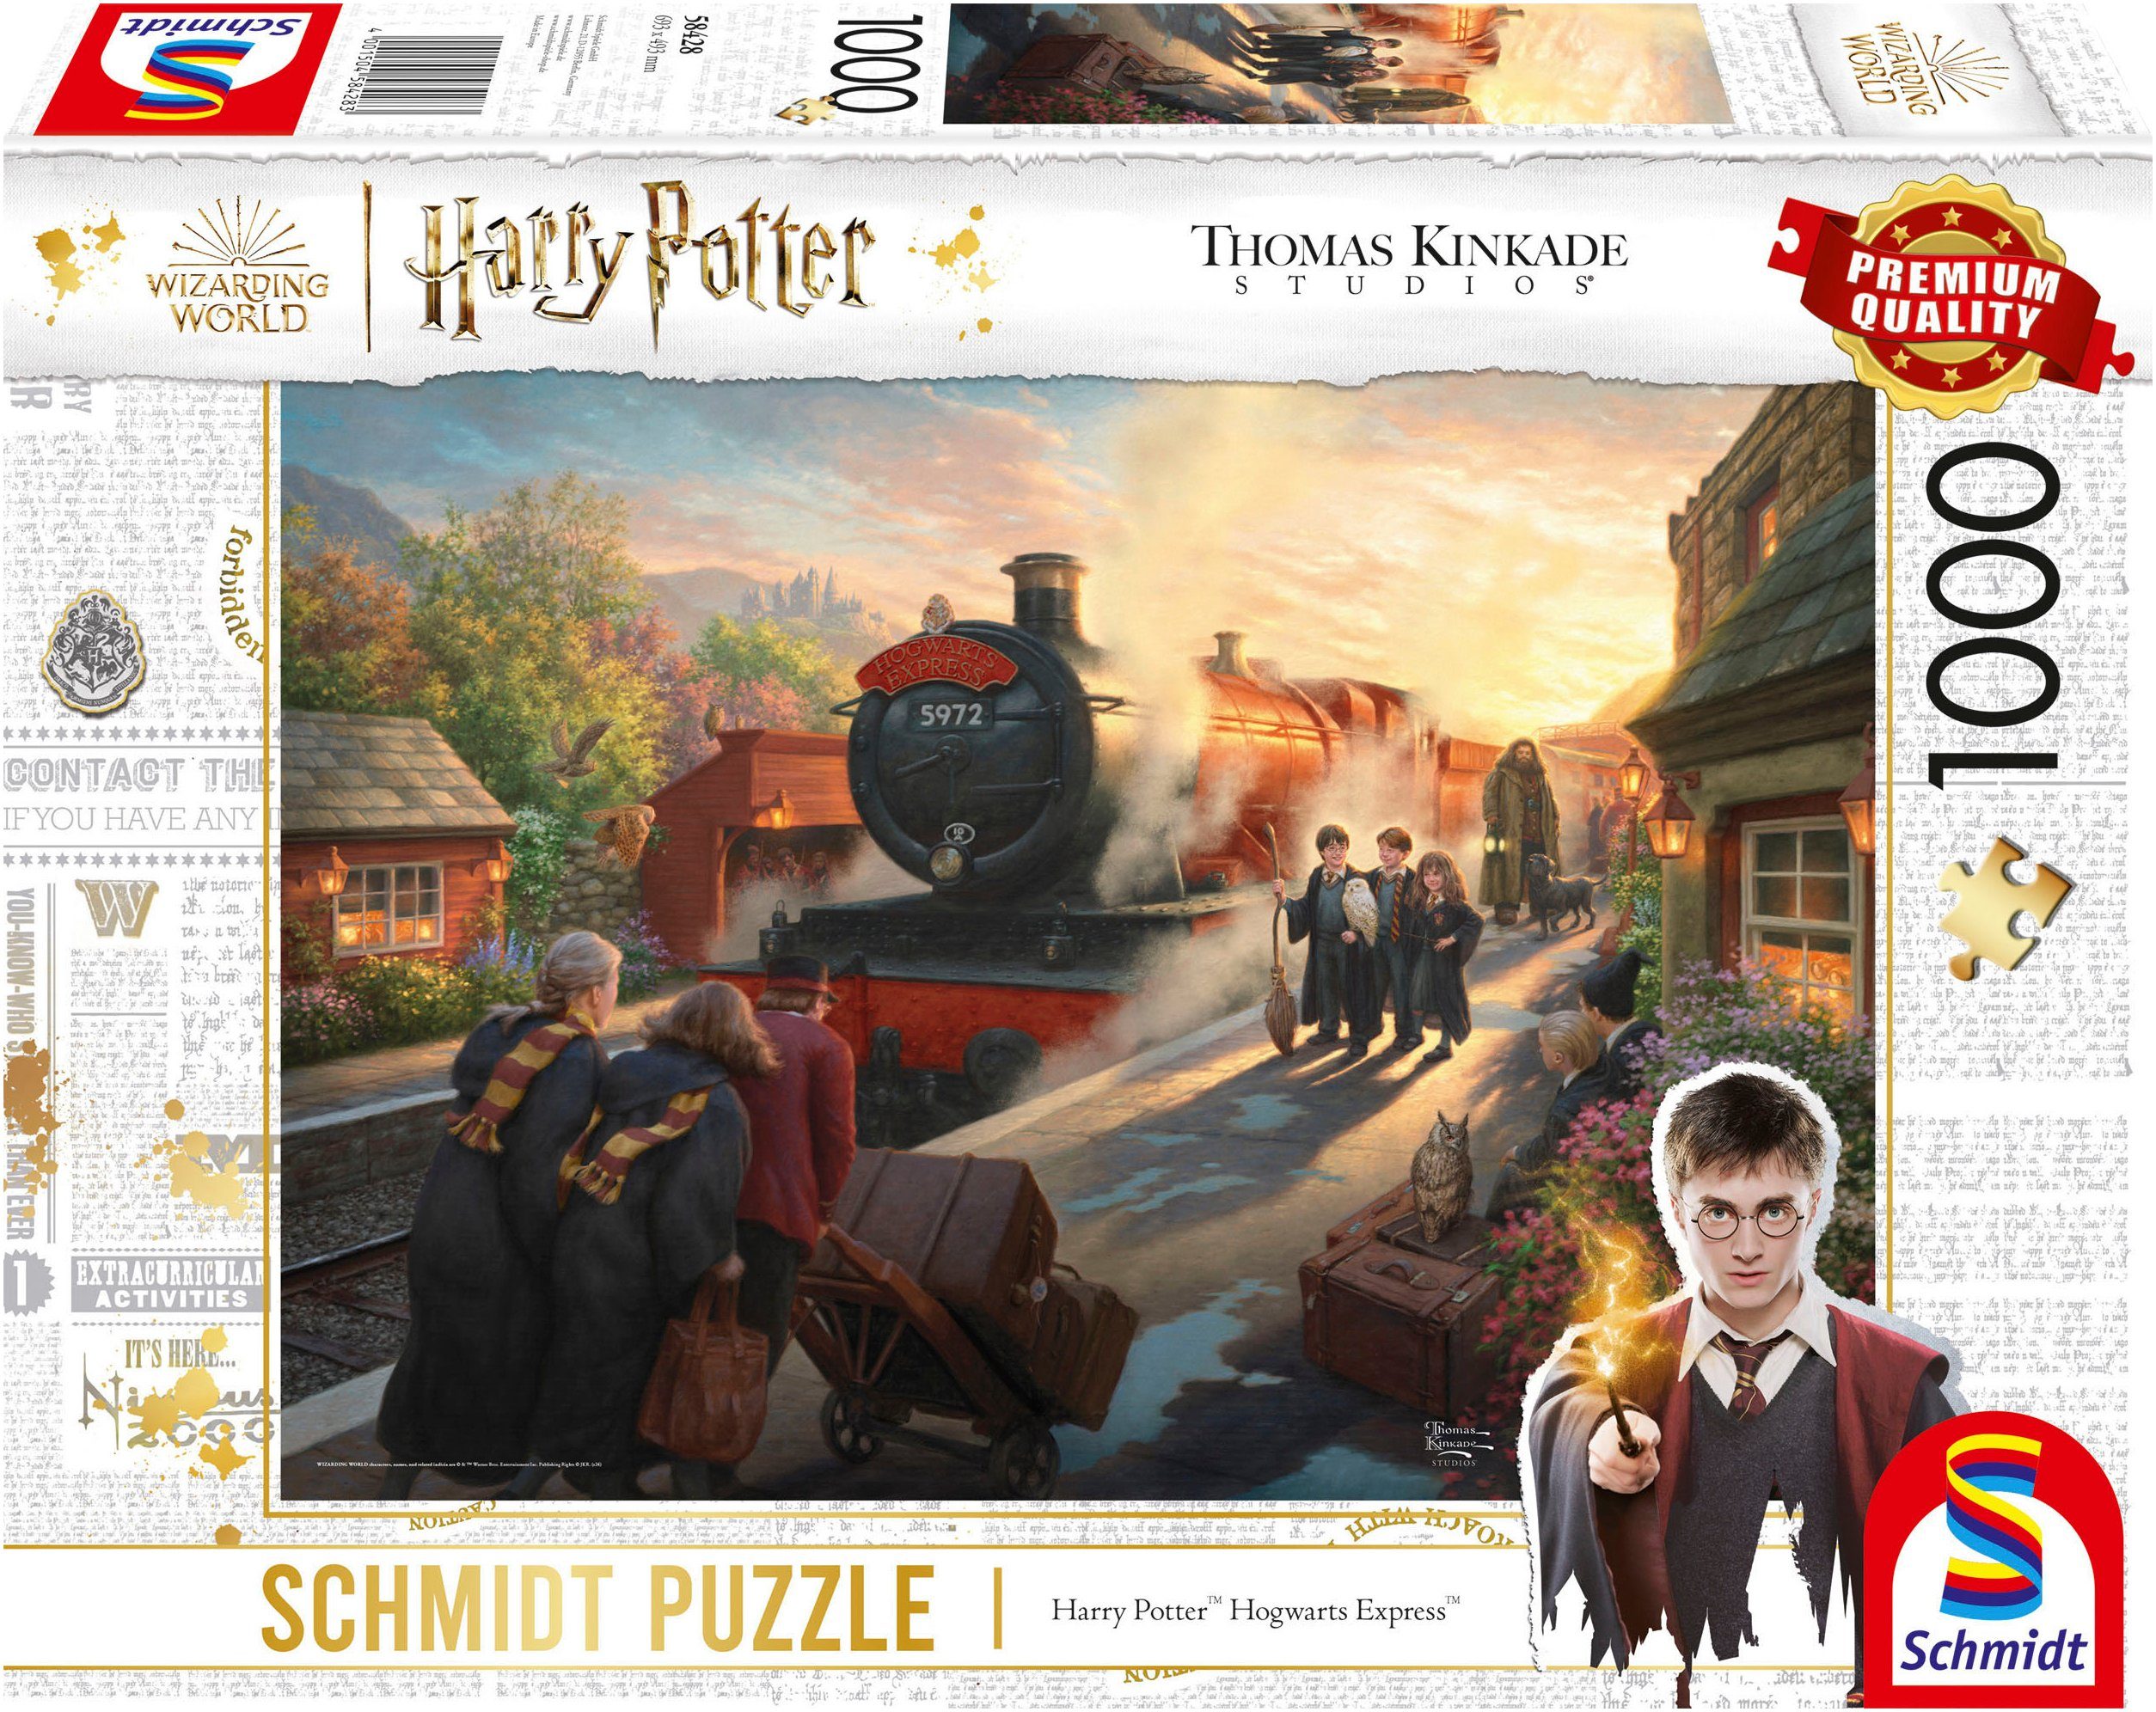 Schmidt Spiele Puzzle Wizarding World, Harry Potter™ Hogwarts Express™ von Thomas Kinkade, 1000 Puzzleteile